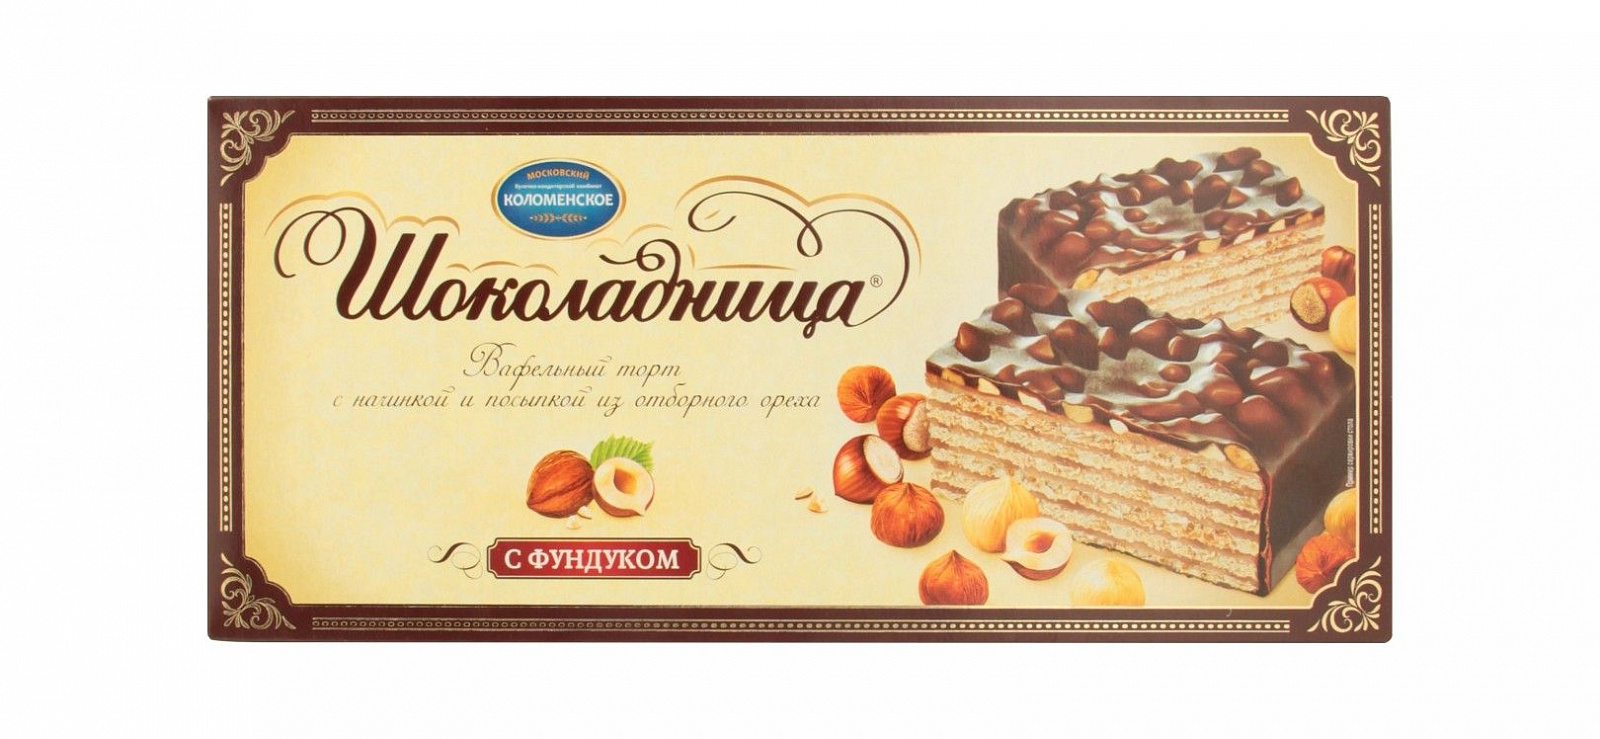 Торт вафельный Шоколадница Коломенское